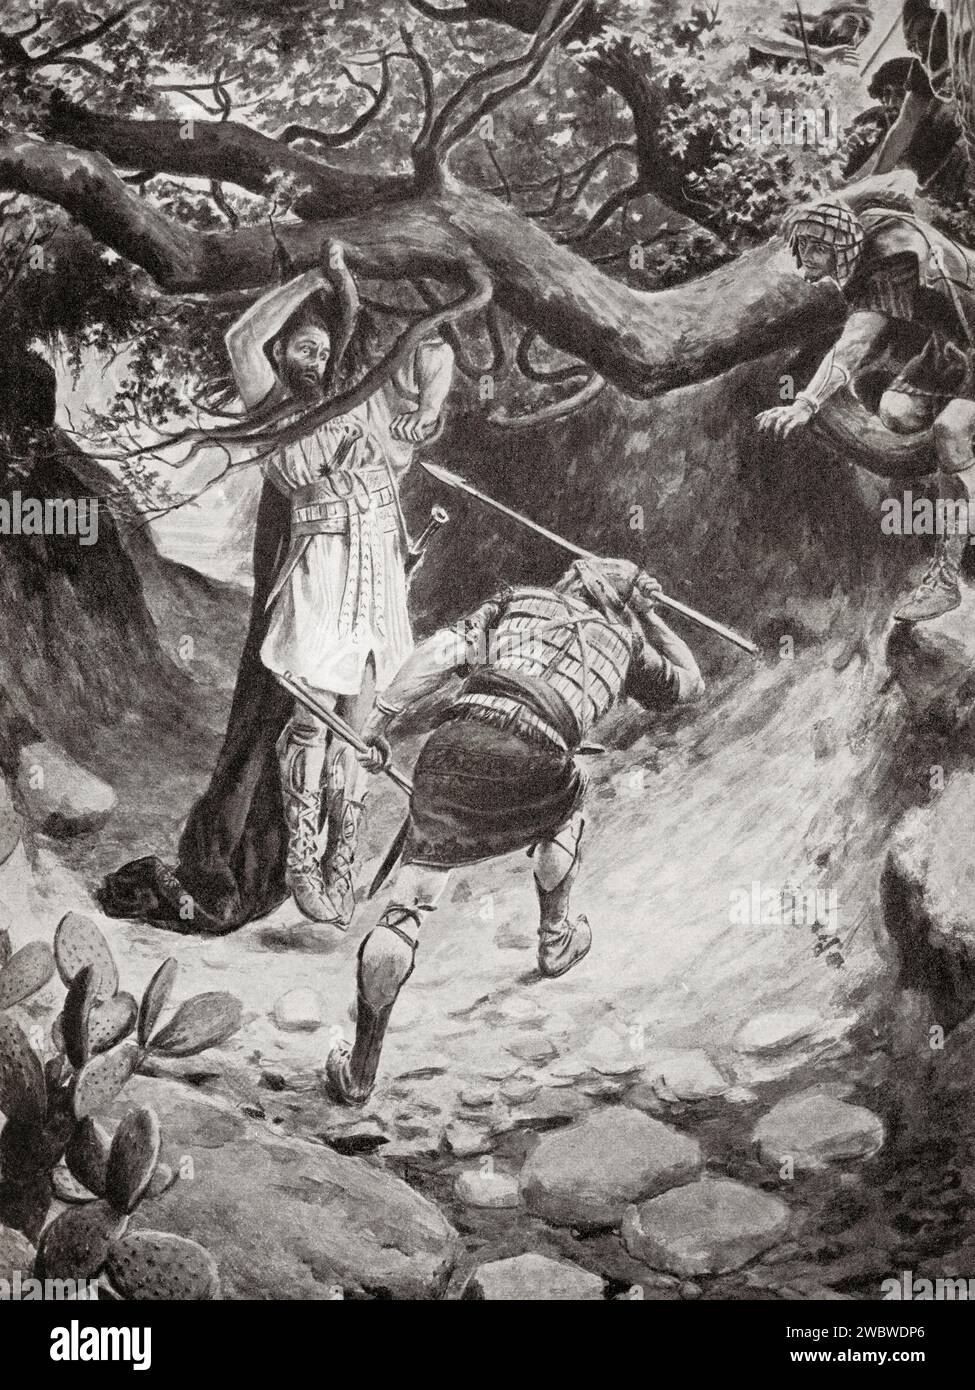 La mort d'Absalom ou Avshalom durant la bataille de la forêt d'Éphraïm. L'histoire de Hutchinson de l'ONU, publié en 1915. Banque D'Images